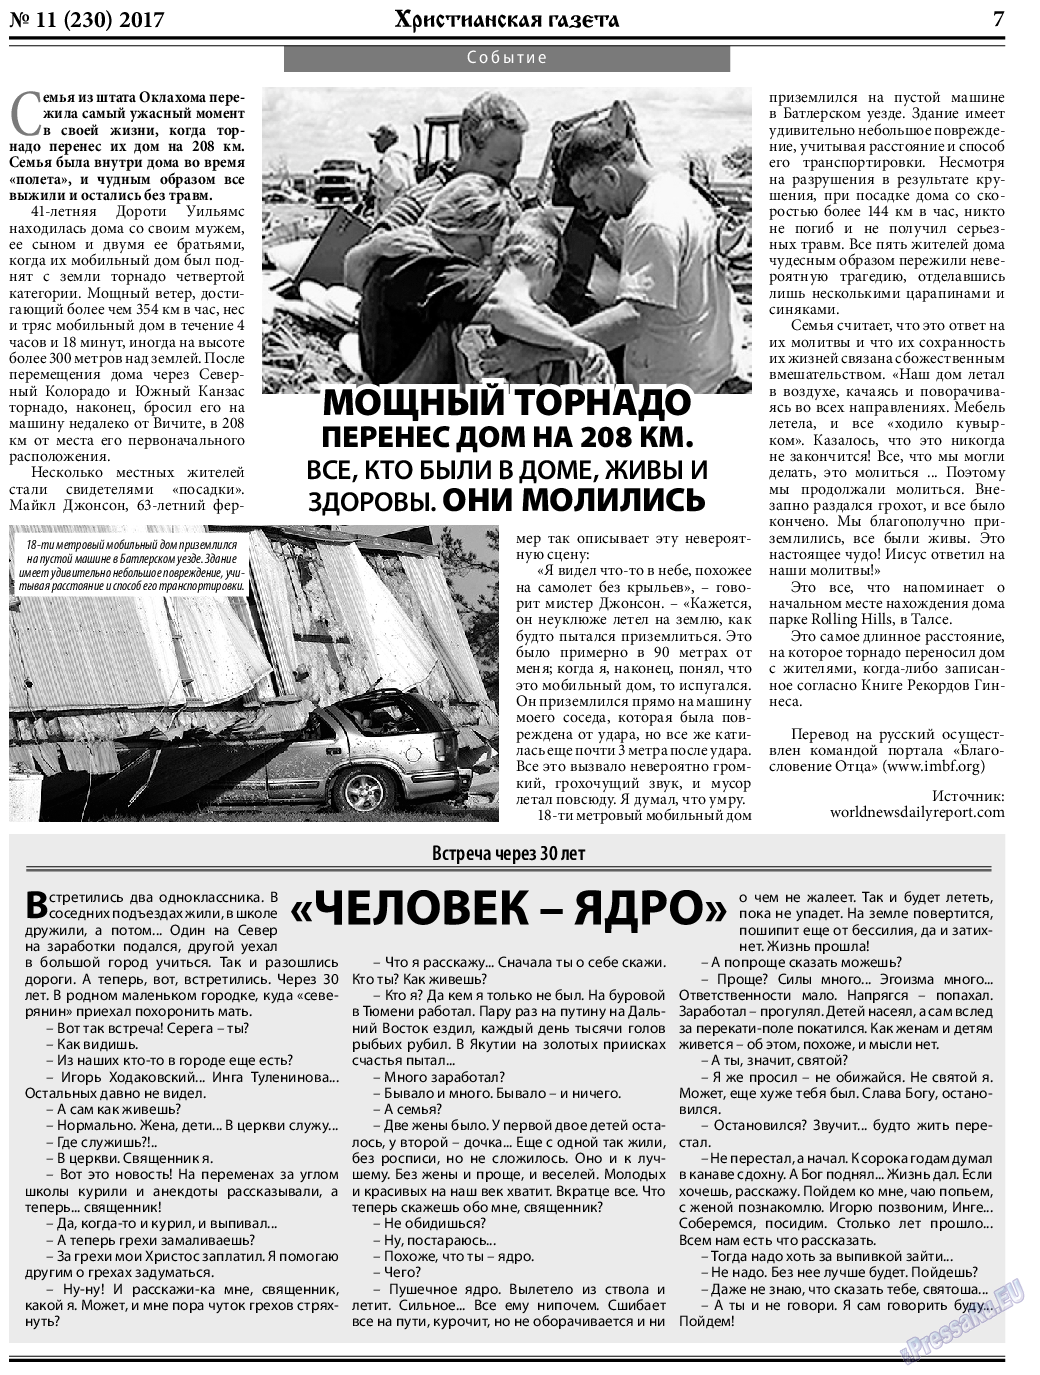 Христианская газета, газета. 2017 №11 стр.7